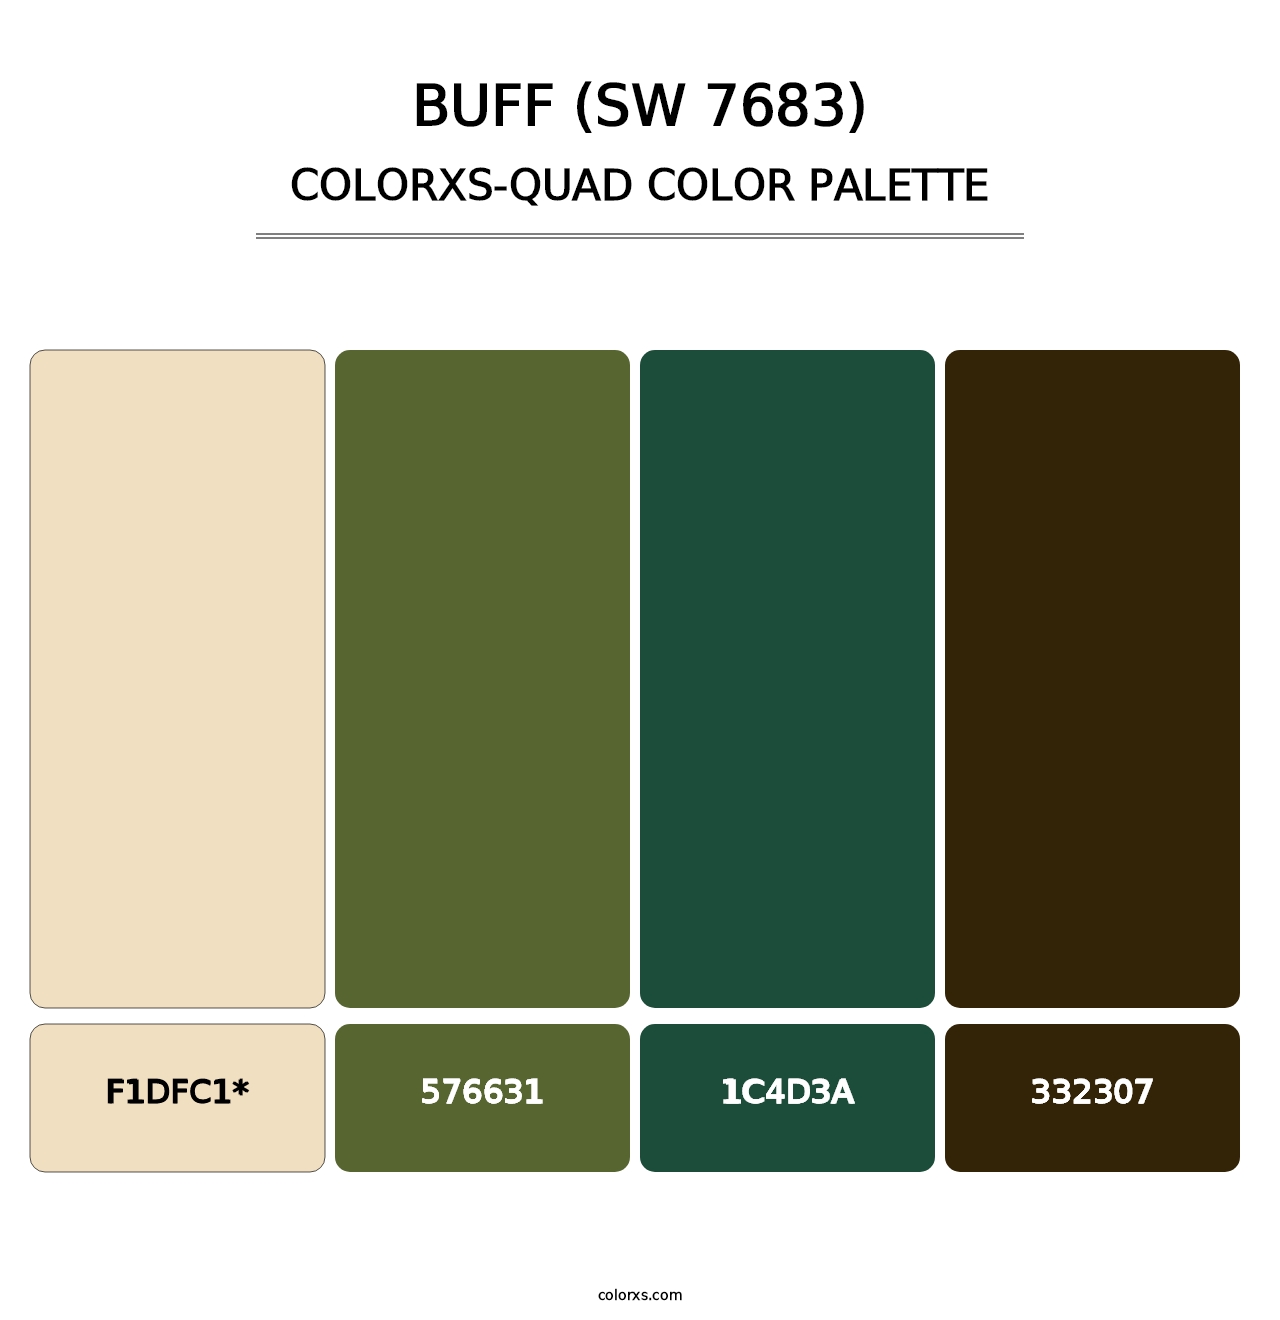 Buff (SW 7683) - Colorxs Quad Palette